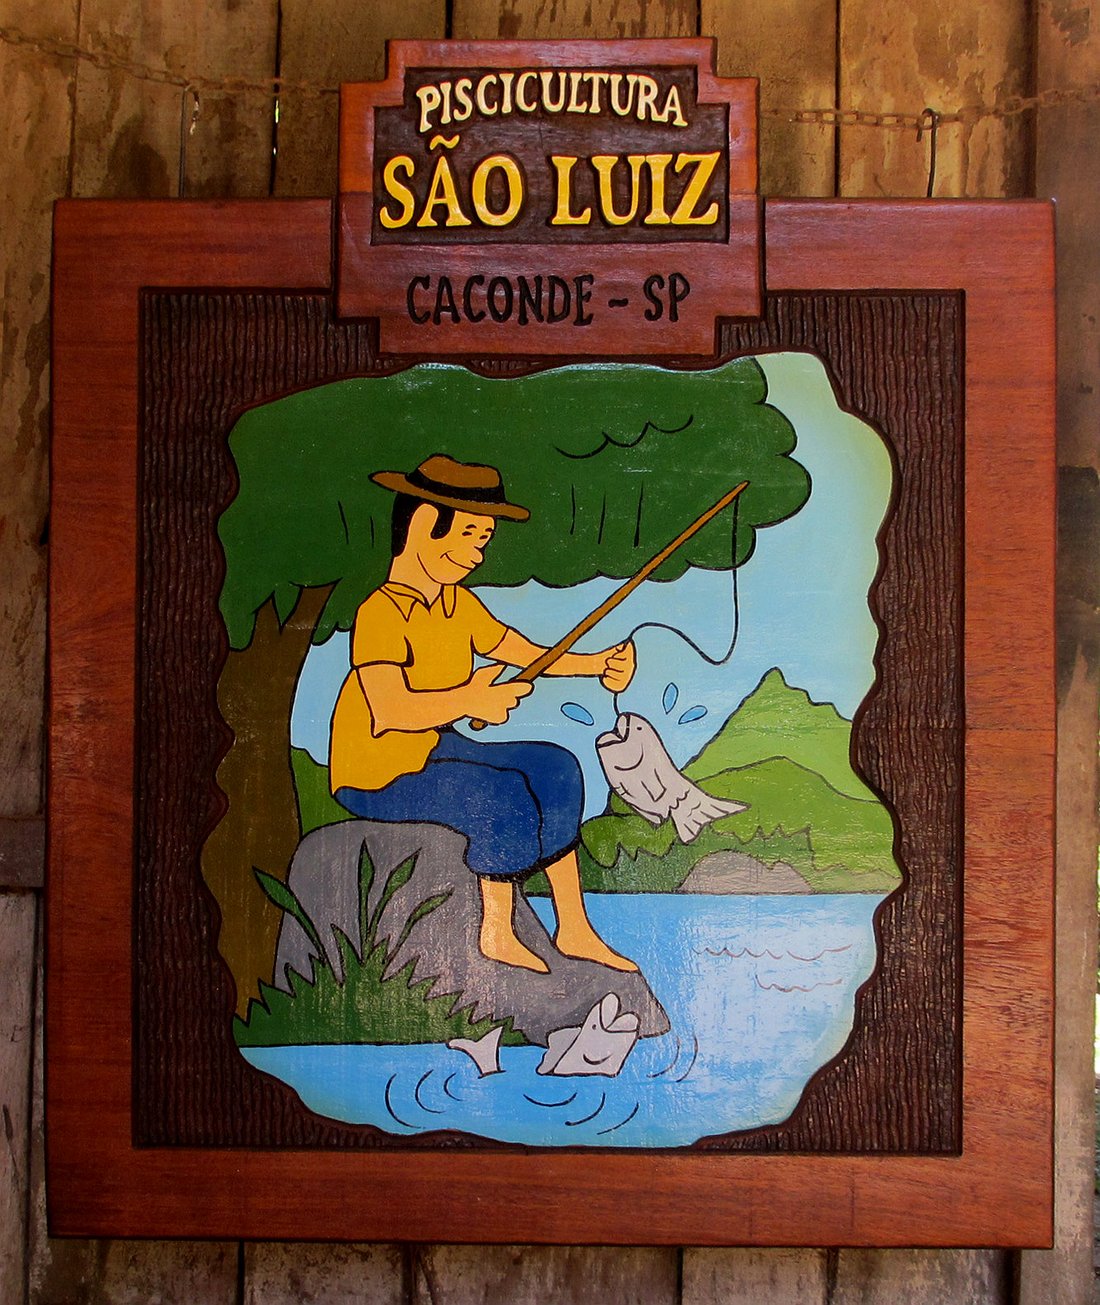 Piscicultura São Luiz